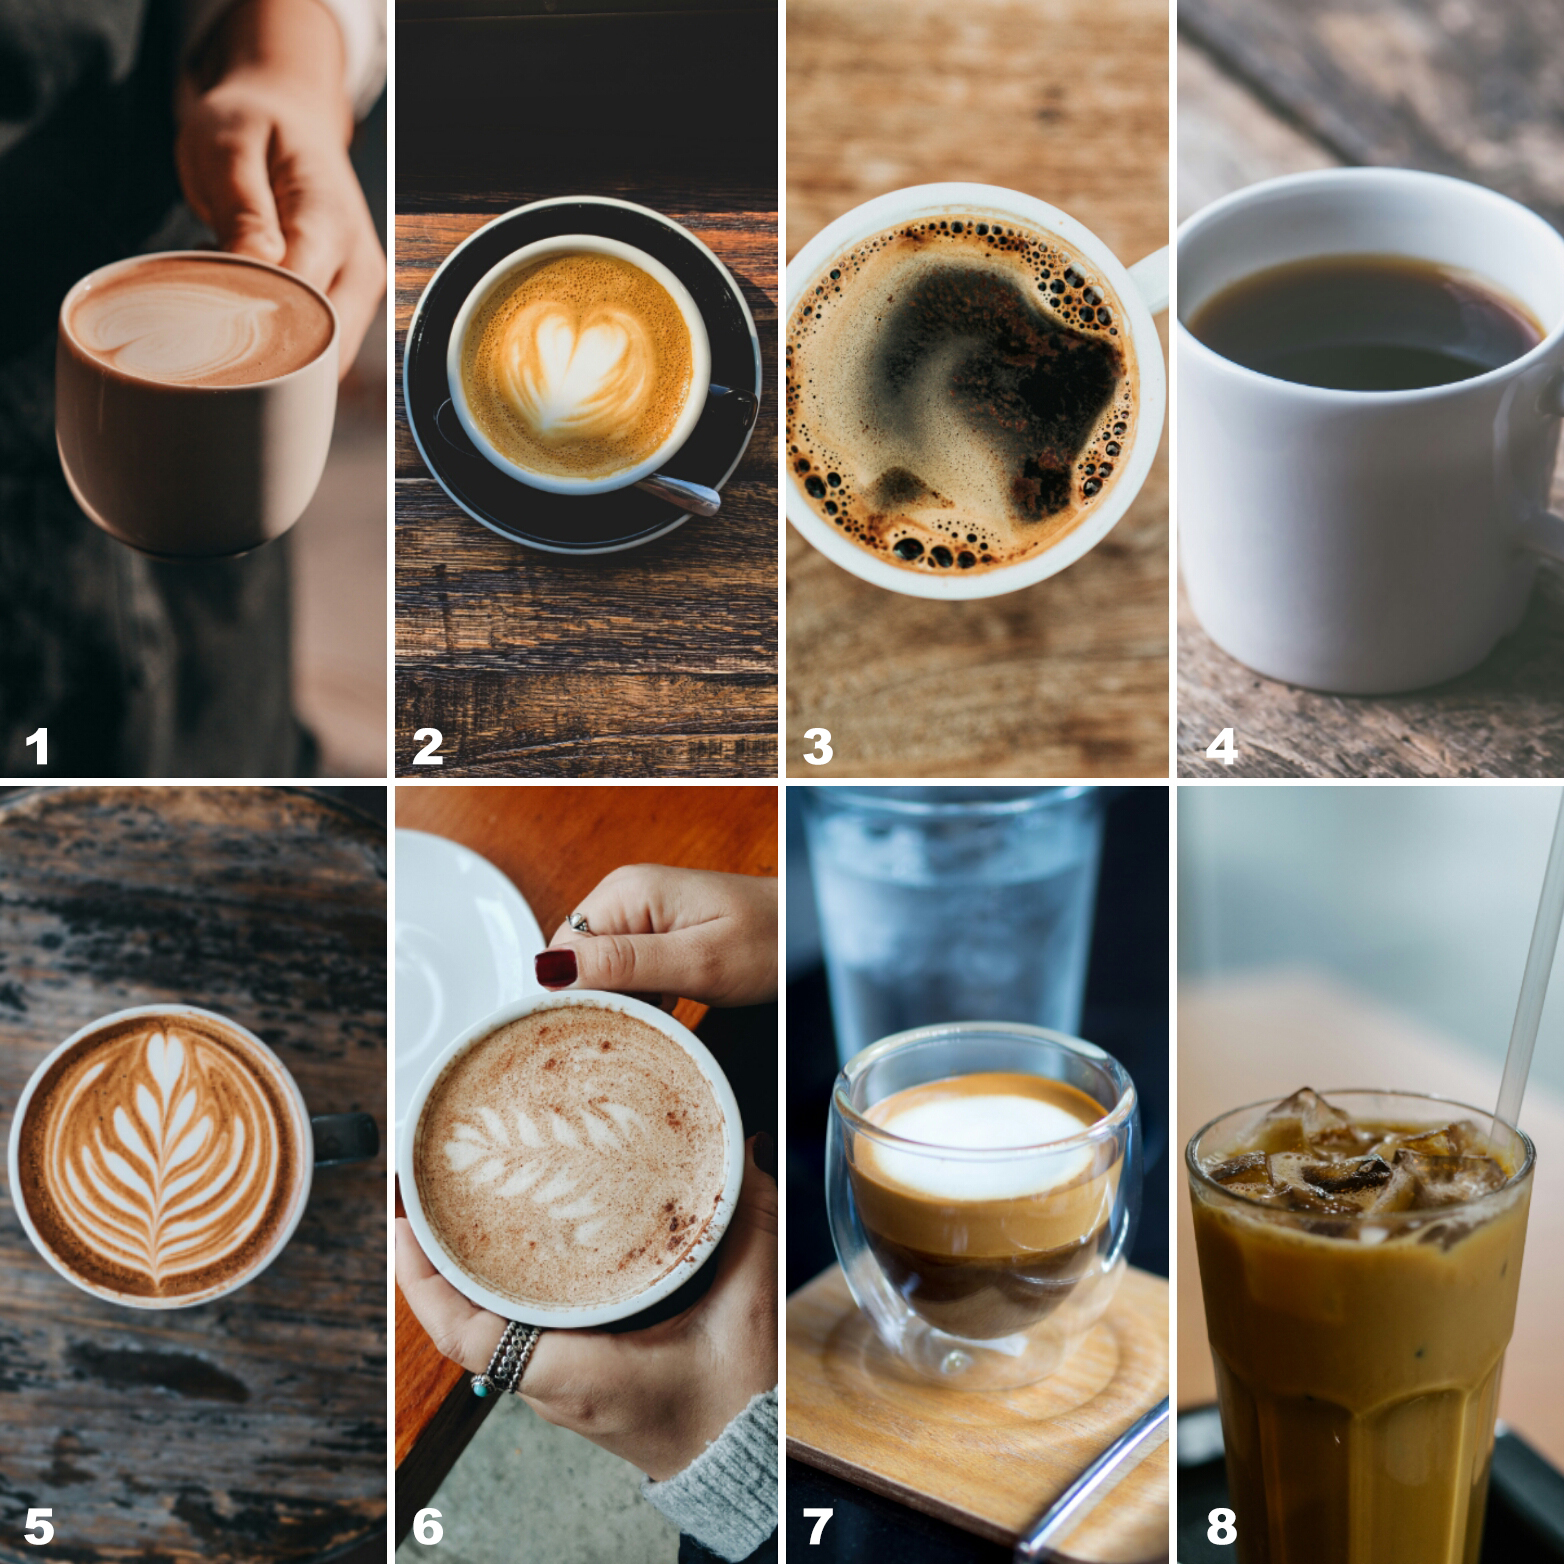 أنواع القهوة المختلفة ألذ أنواع القهوة وأشهرها وطريقة التحضير